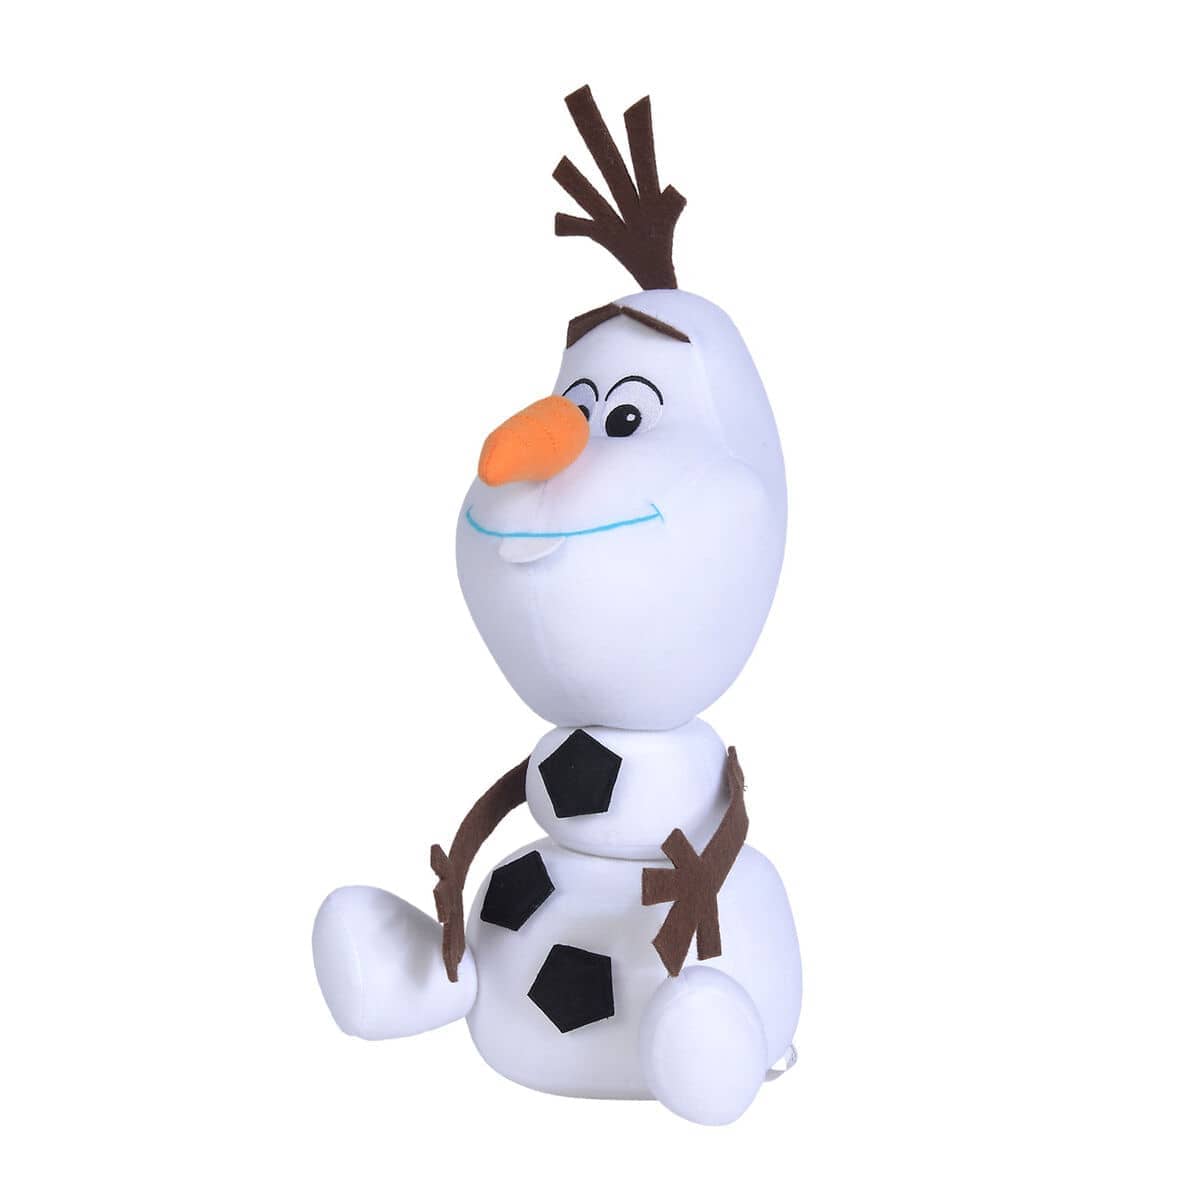 Peluche Reposicionable Olaf Frozen 2 Disney soft 30cm - Espadas y Más